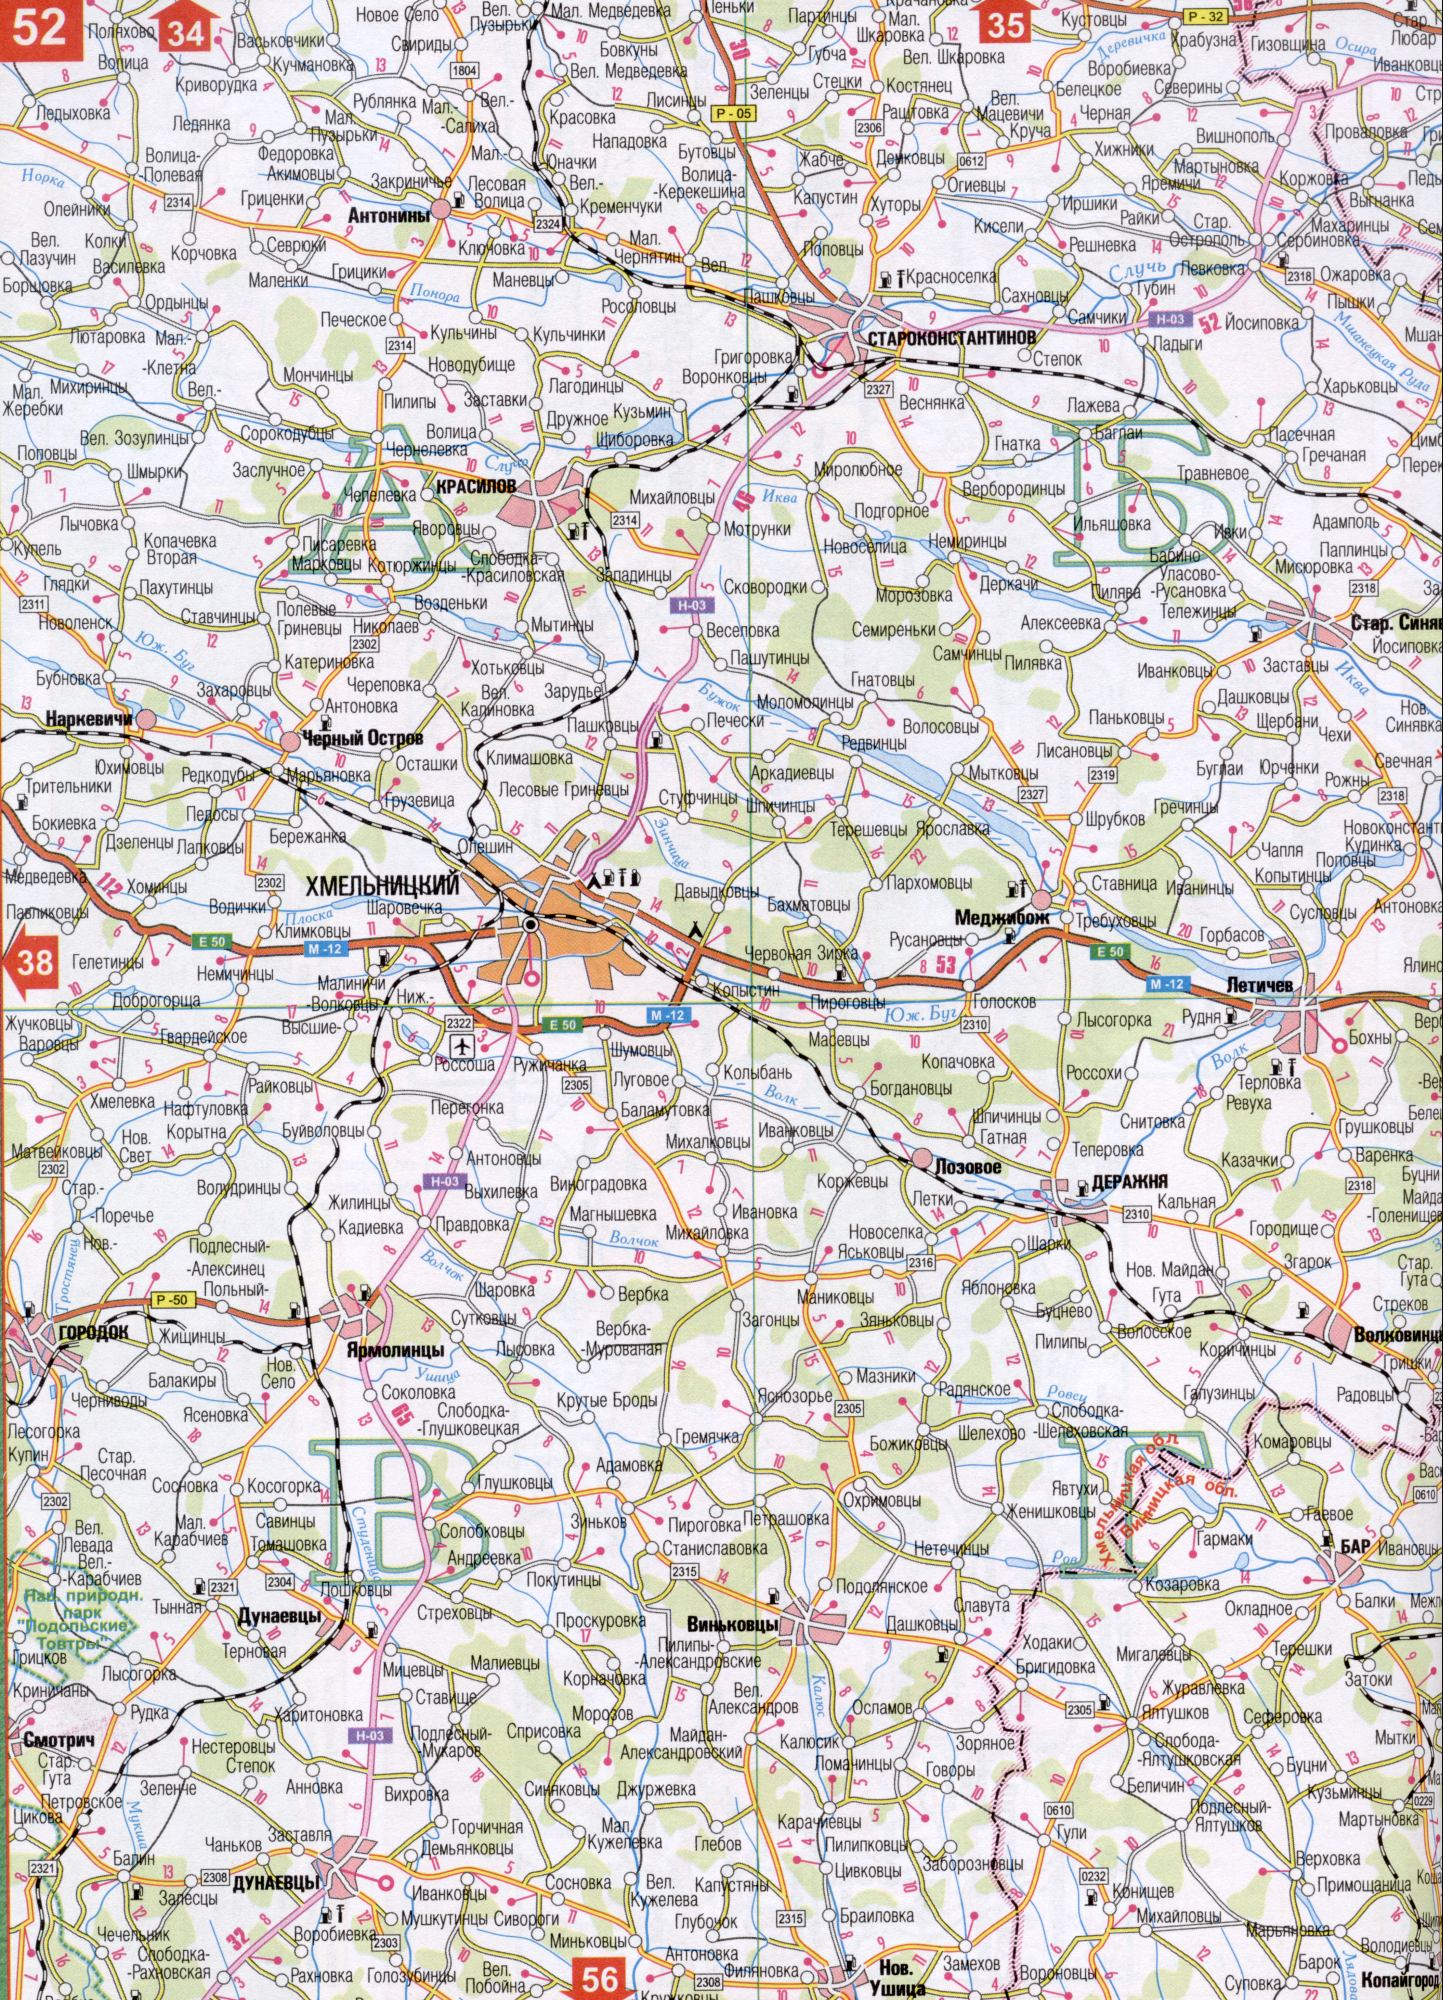 Karte von Winnyzja Region der Ukraine. Eine detaillierte Karte der Maßstab 1cm: 5000m Winnyzja Region. Download der kostenlosen Gelee, Adampol, Tschechen, Sorokodubtsy, Tritelniki